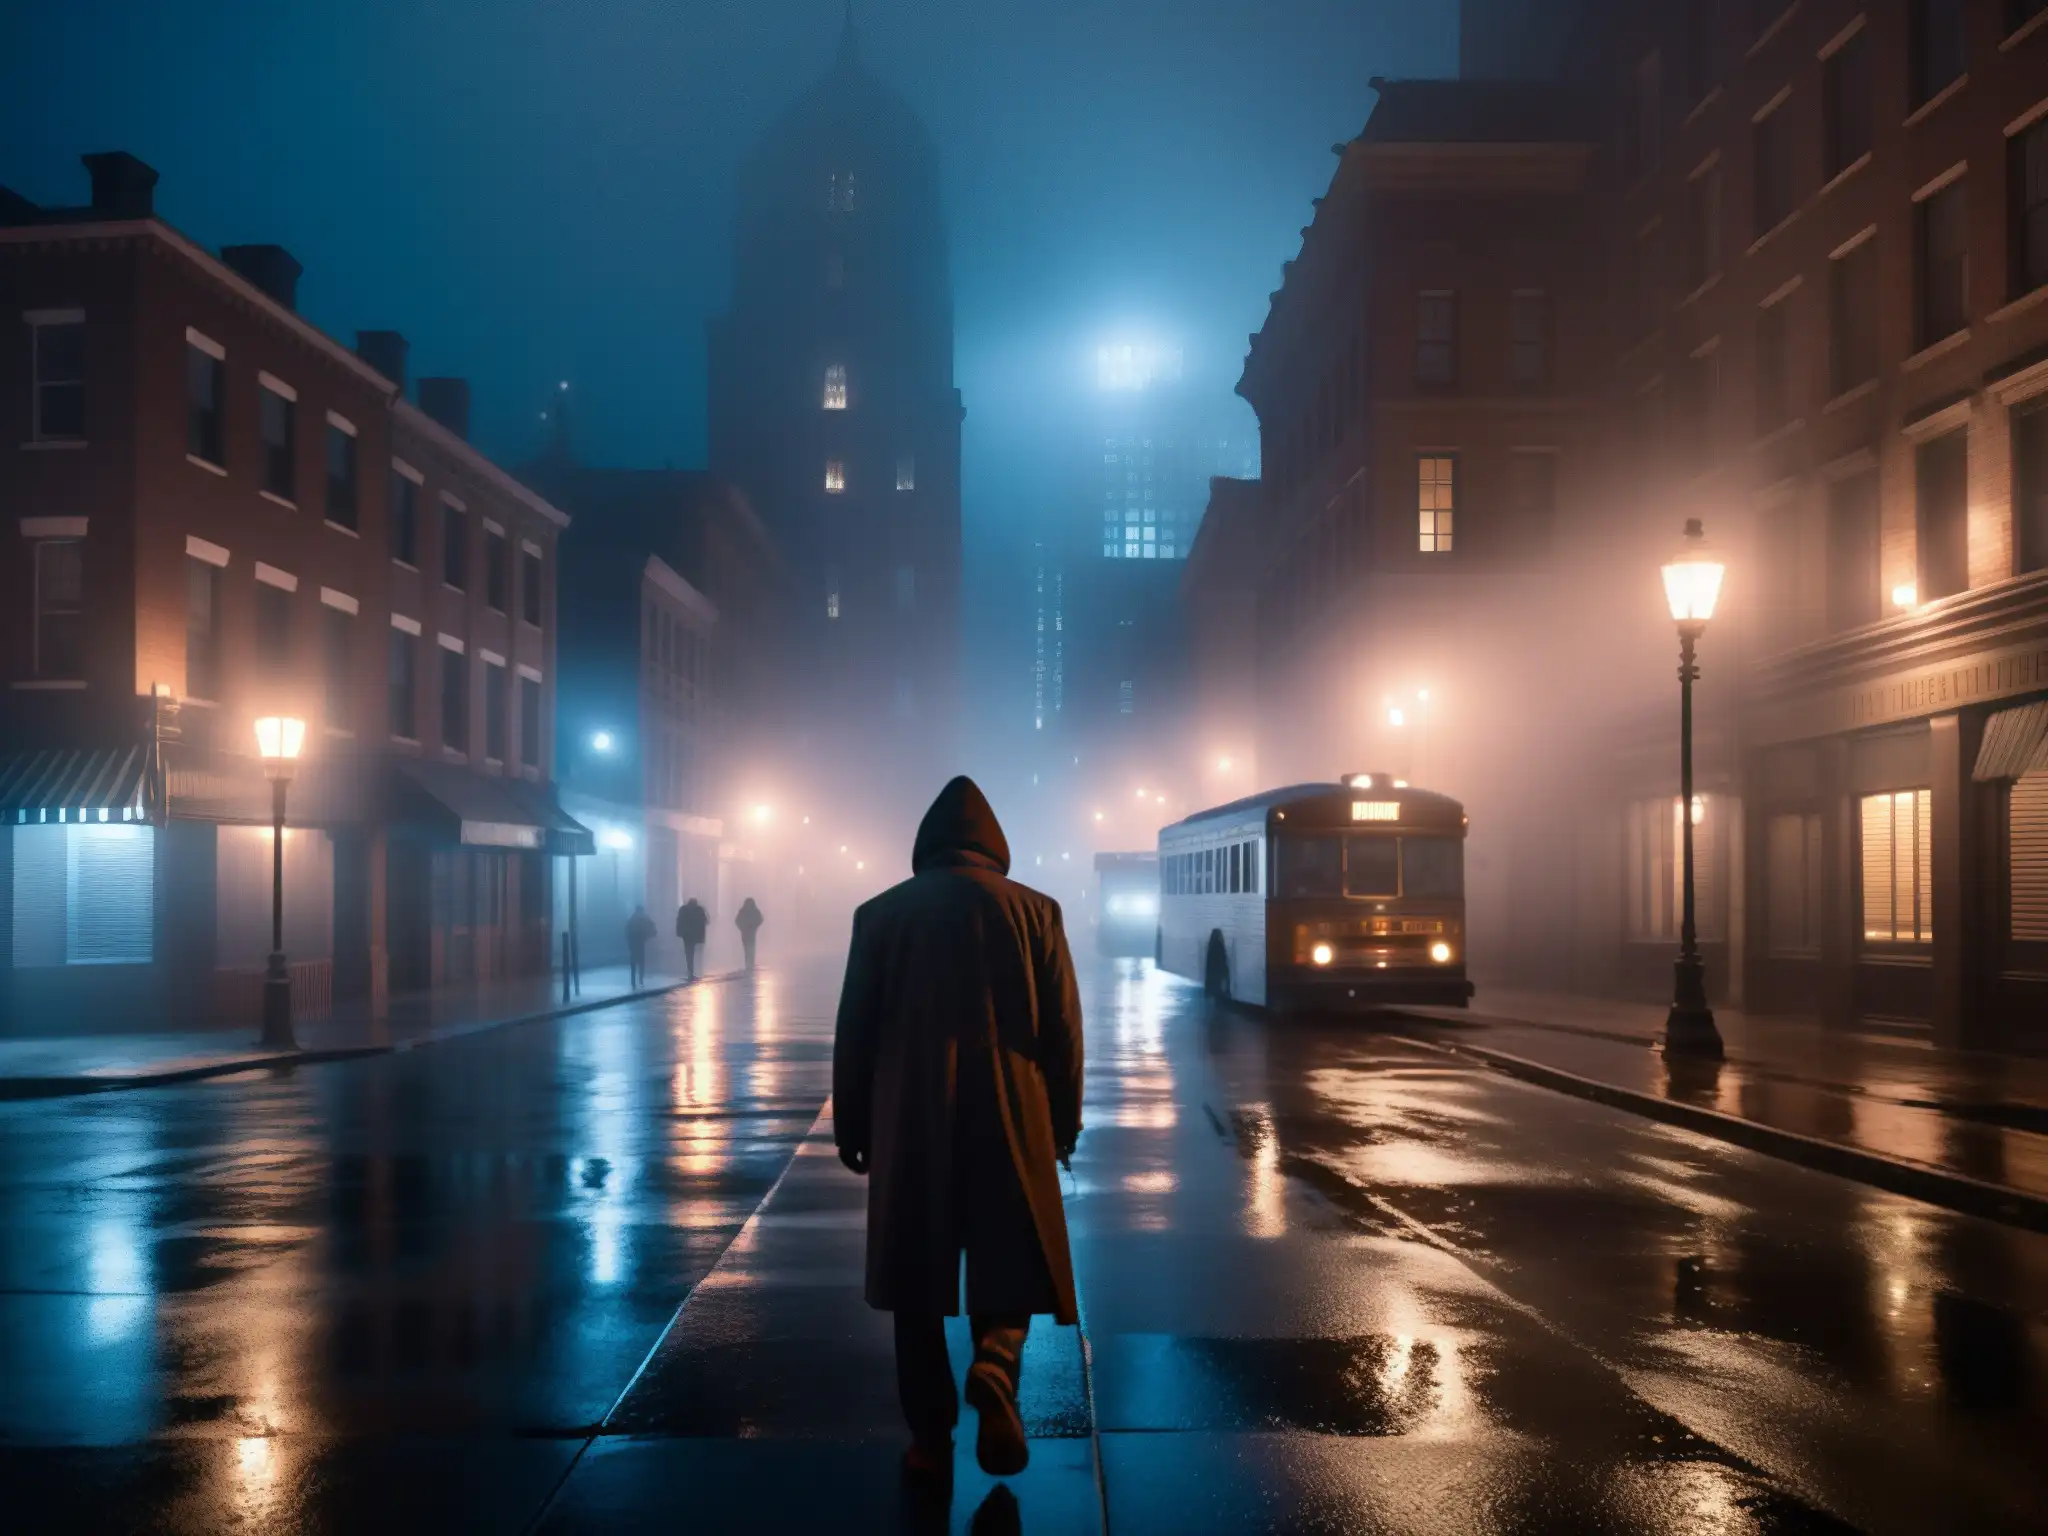 Una calle urbana oscura y neblinosa de noche, con edificios antiguos y una figura misteriosa con ojos brillantes